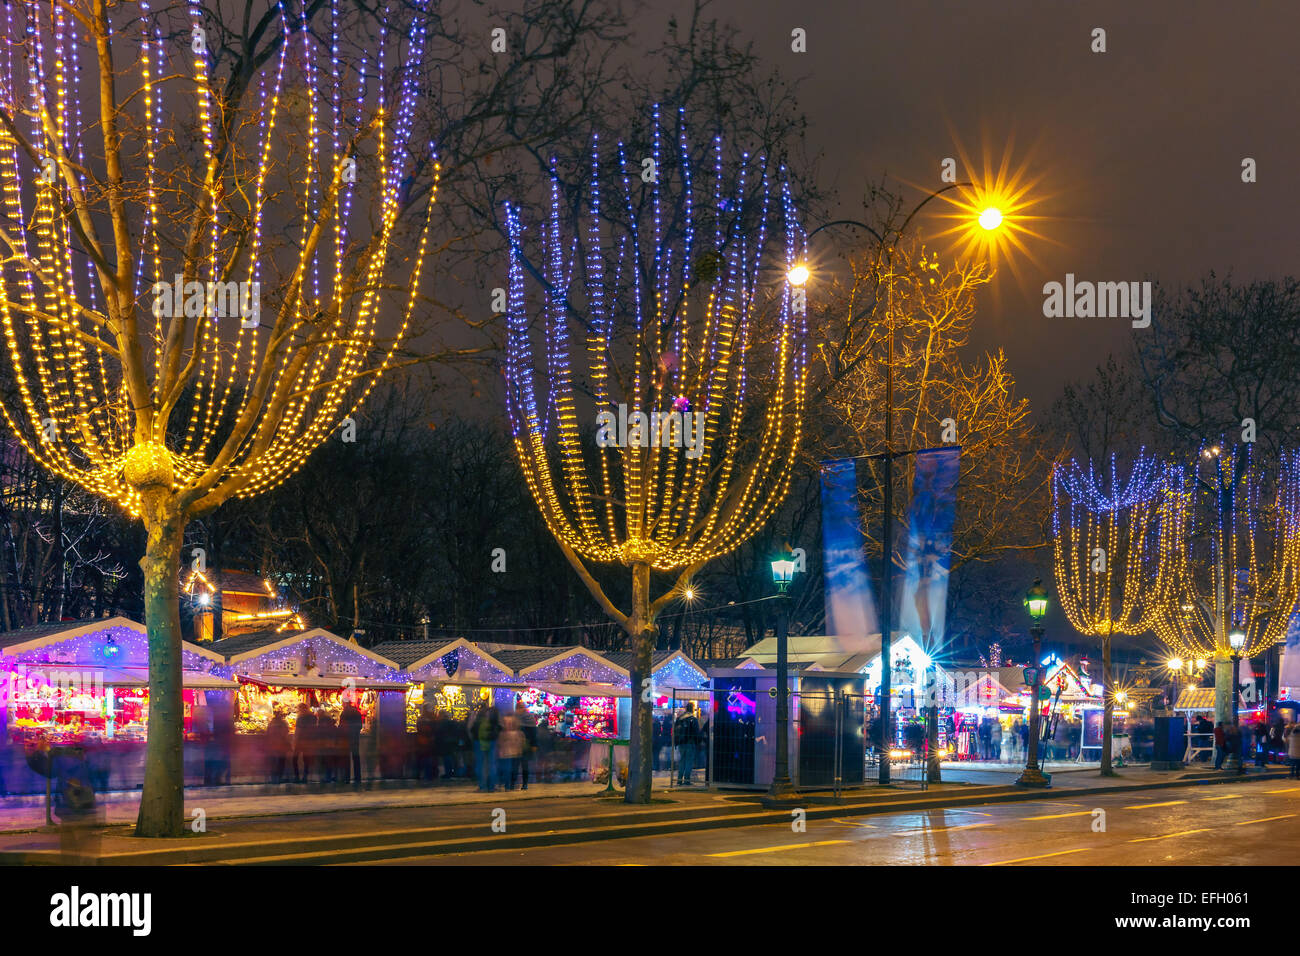 Weihnachtsmarkt auf der ChampsElysees in Paris bei Nacht